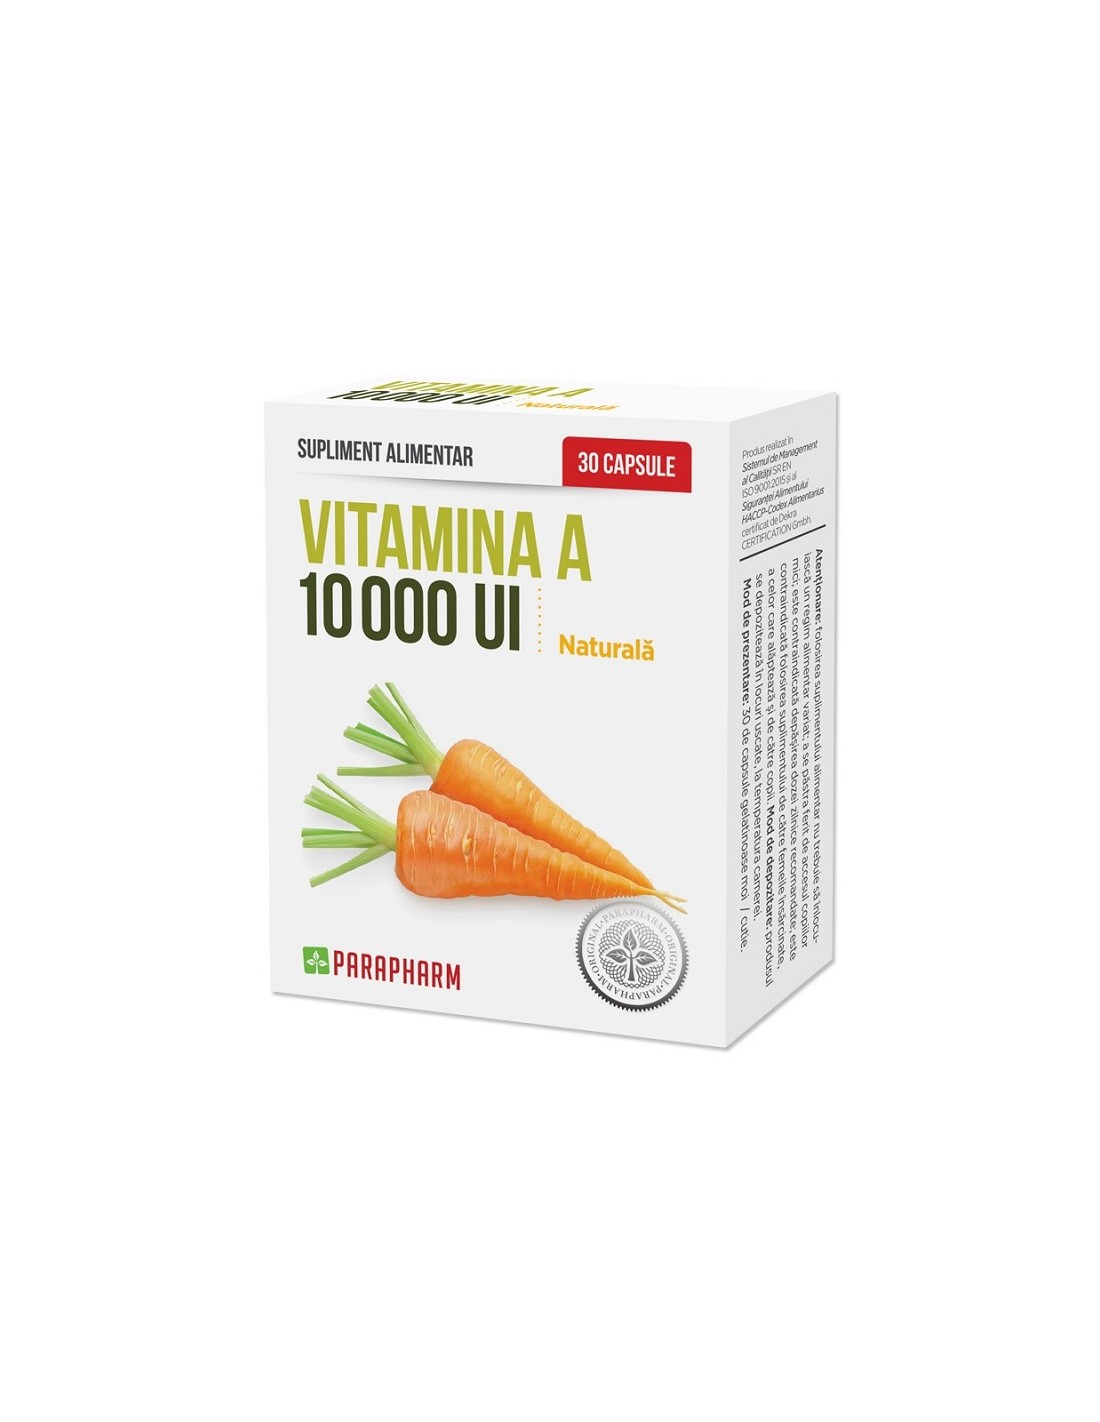 Vitamina A, 10000 Ui, 30 capsule, Parapharm - UZ-GENERAL - PARAPHARM